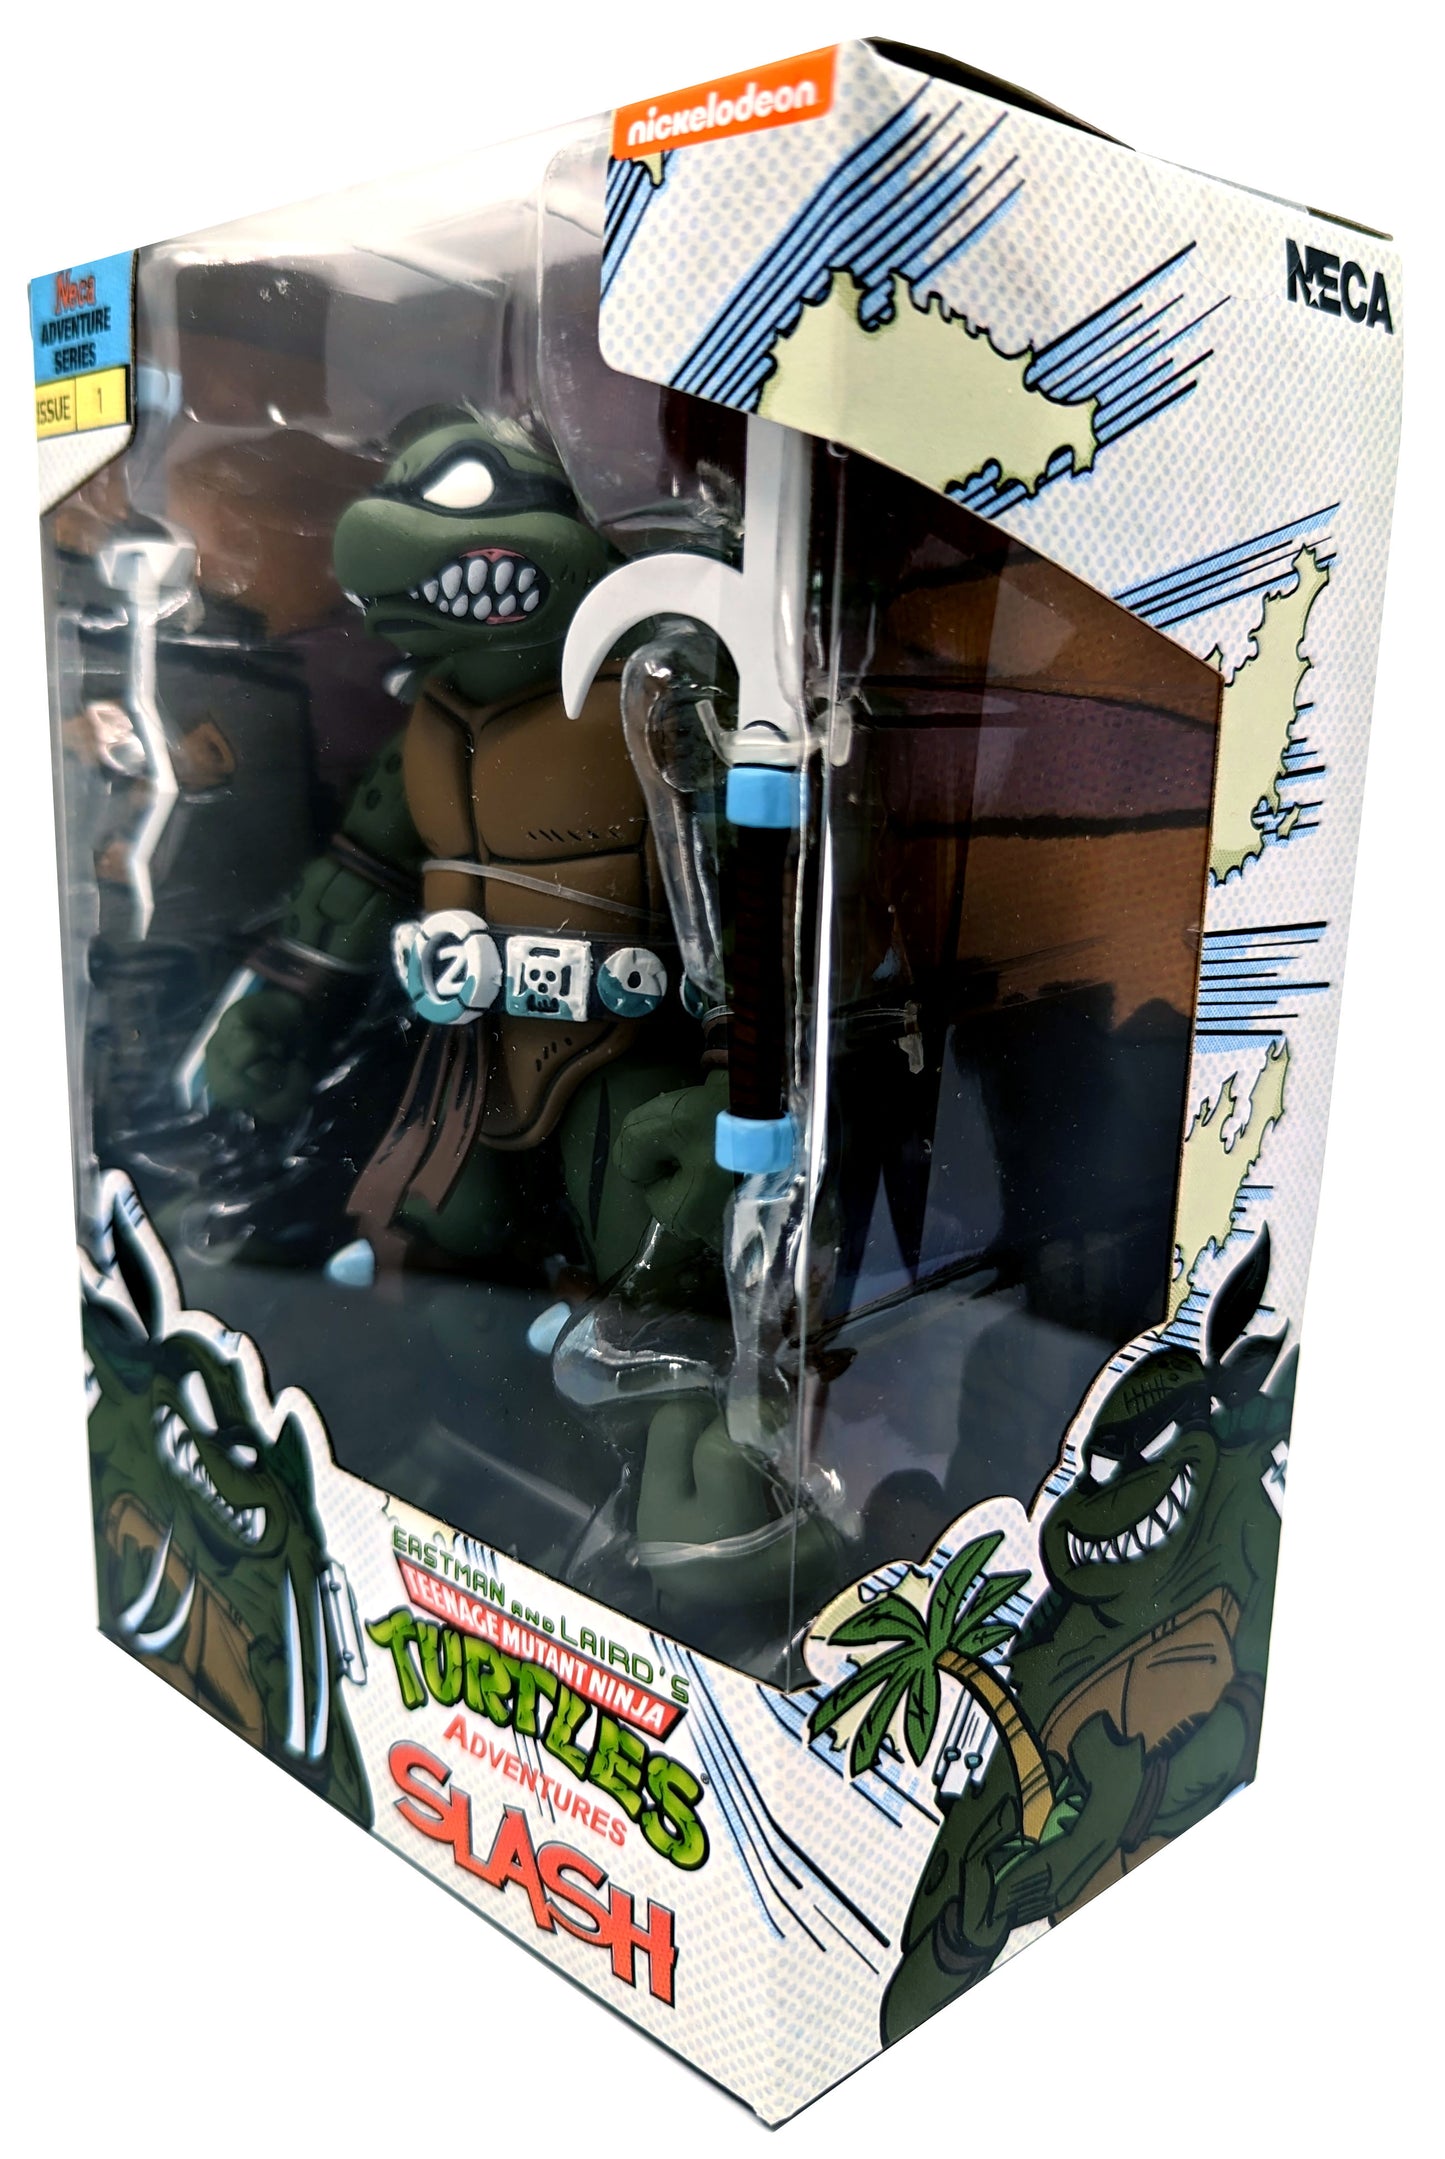 Teenage Mutant Ninja Turtles (Archie Comics) 7” Scale Action Figure – Slash